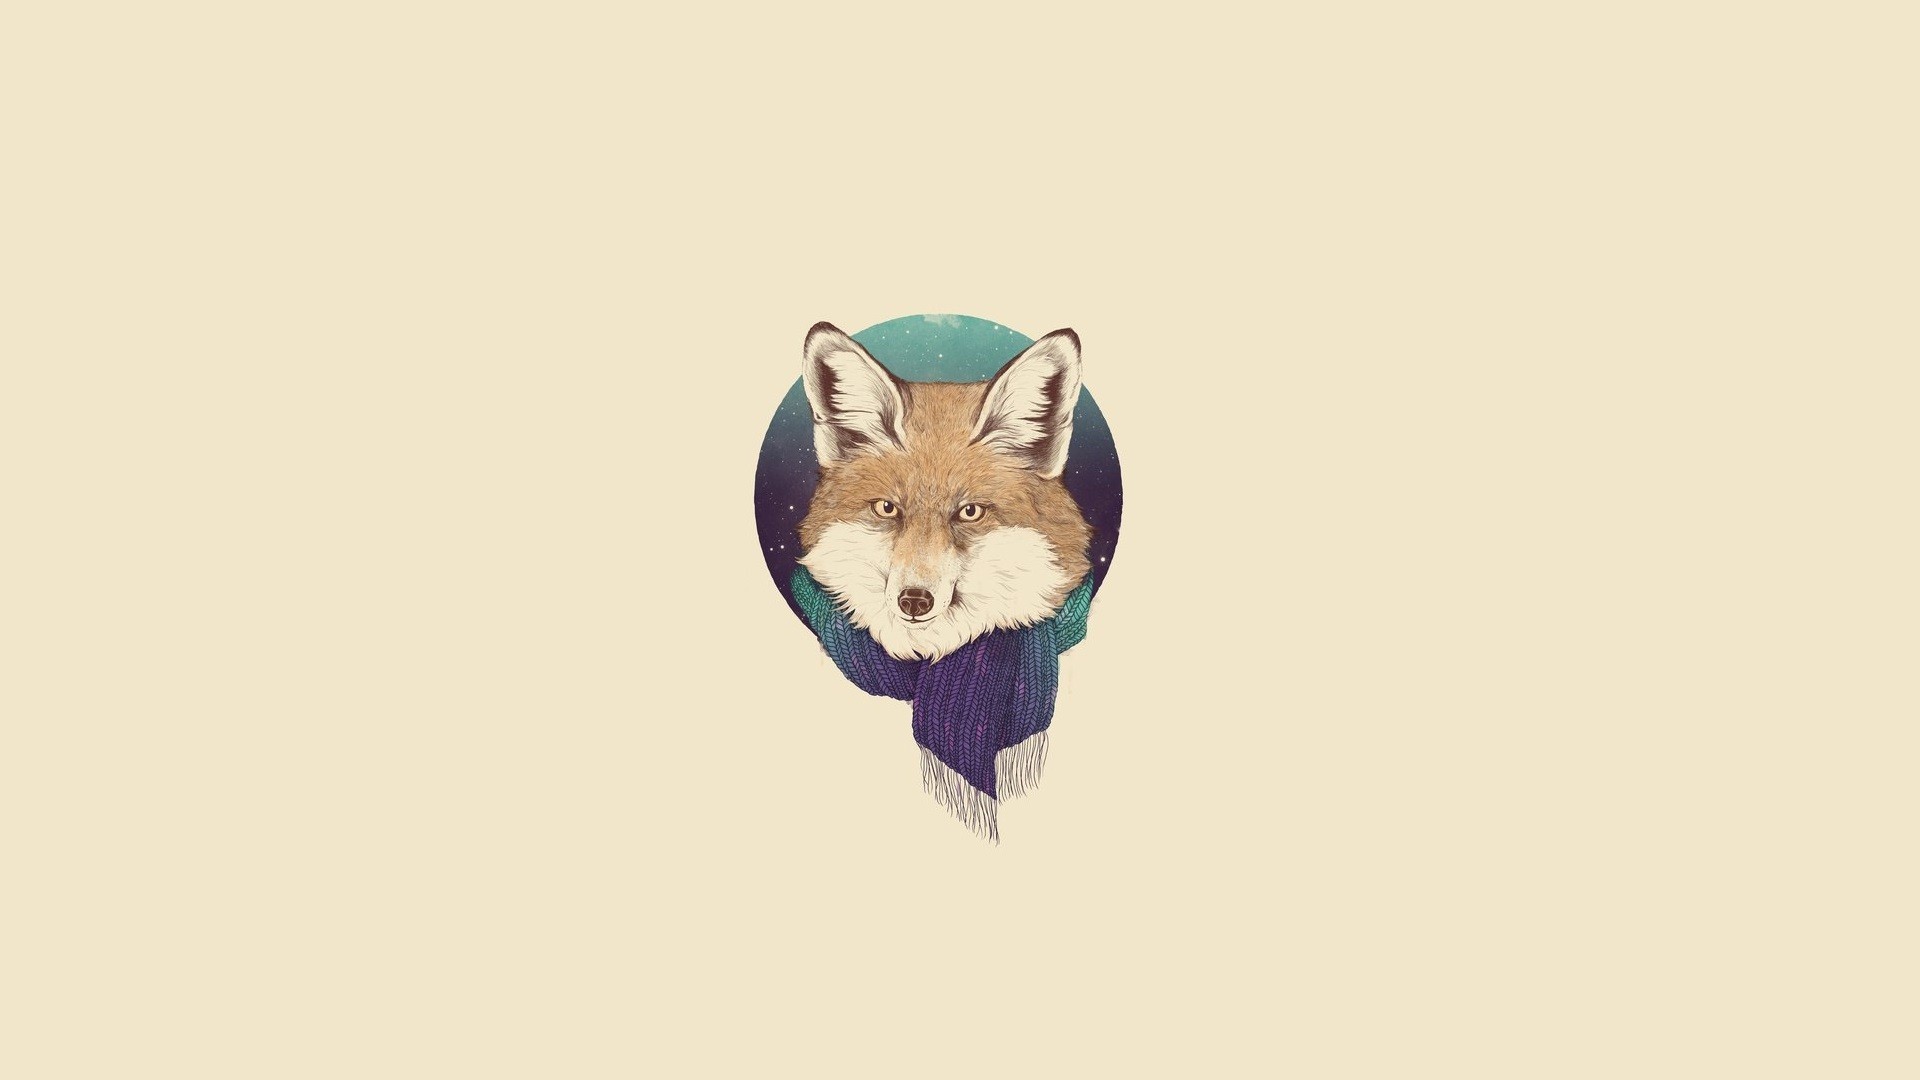 General 1920x1080 fox minimalism animals simple background artwork beige background mammals scarf